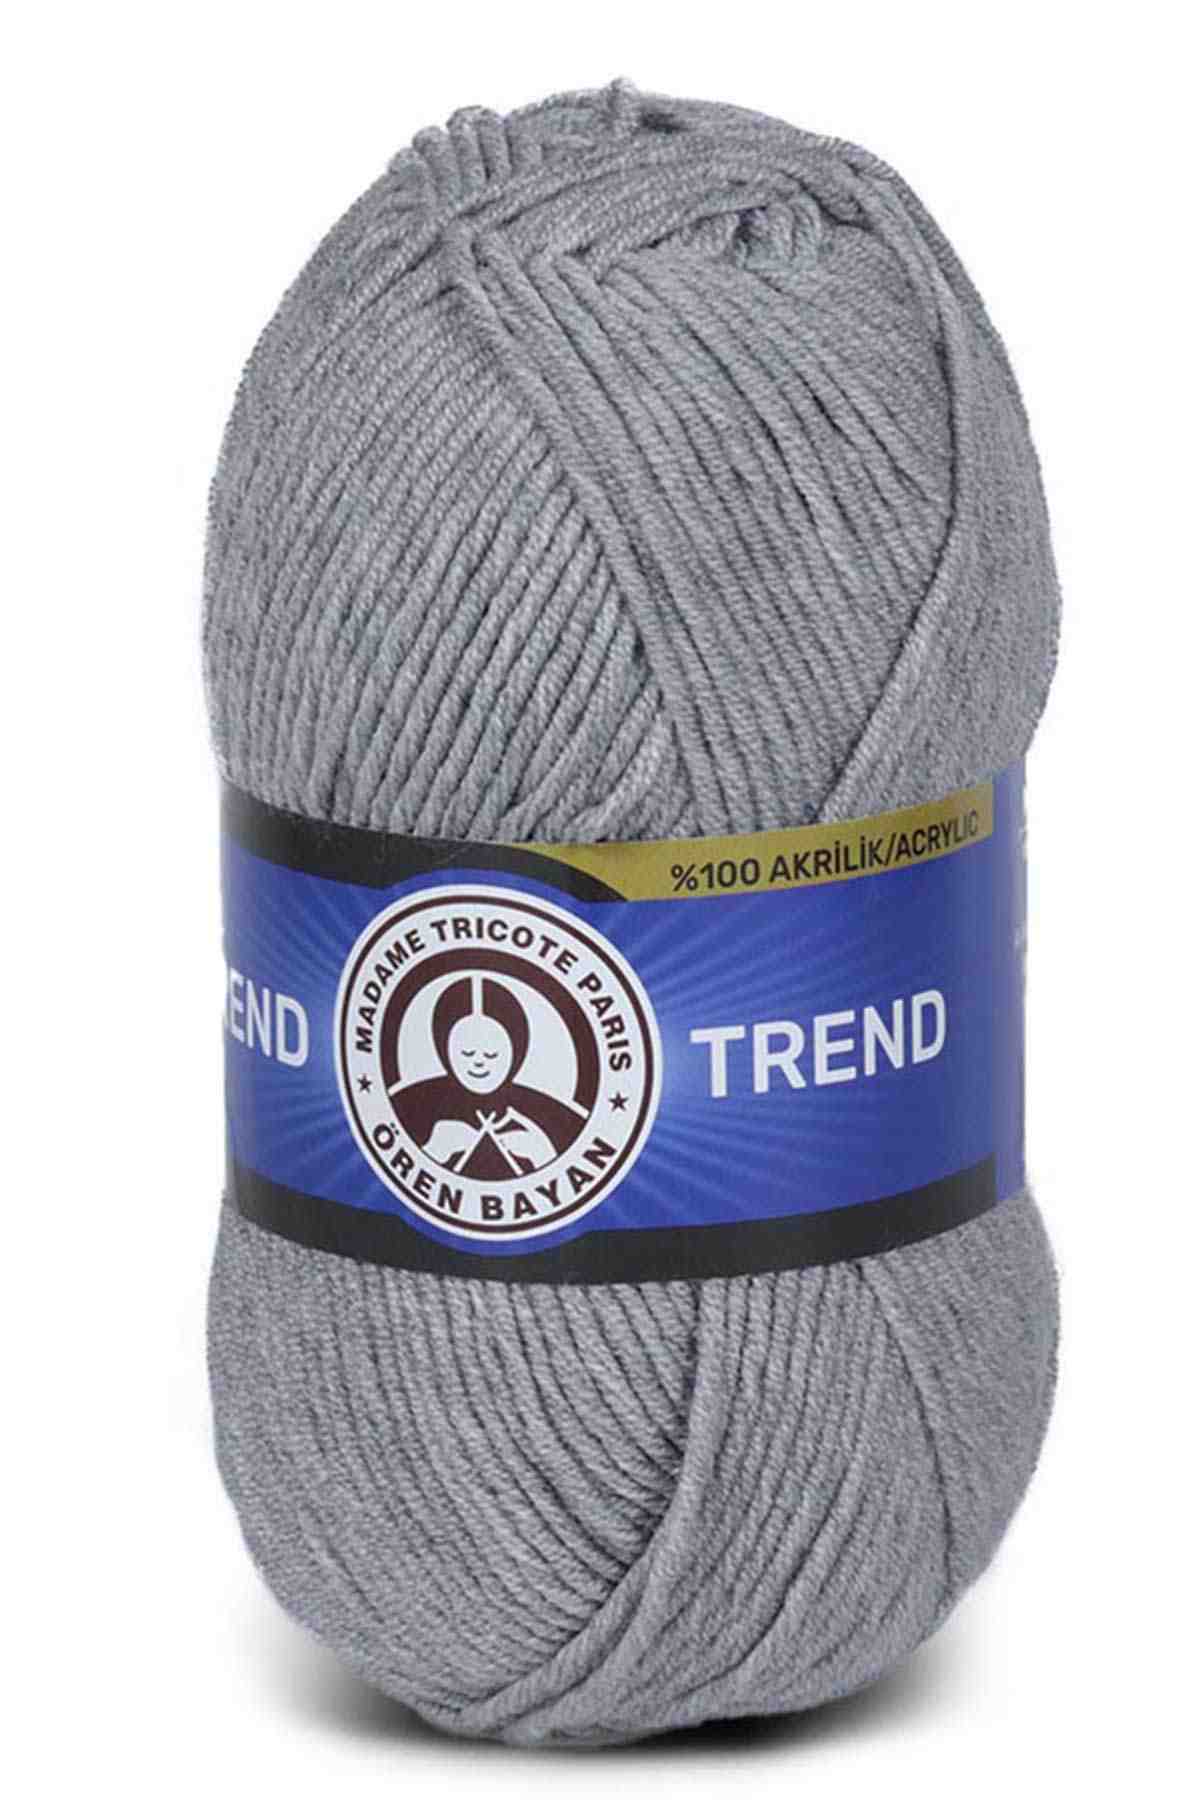 Madame Tricote Paris Trend Acrylic Yarn